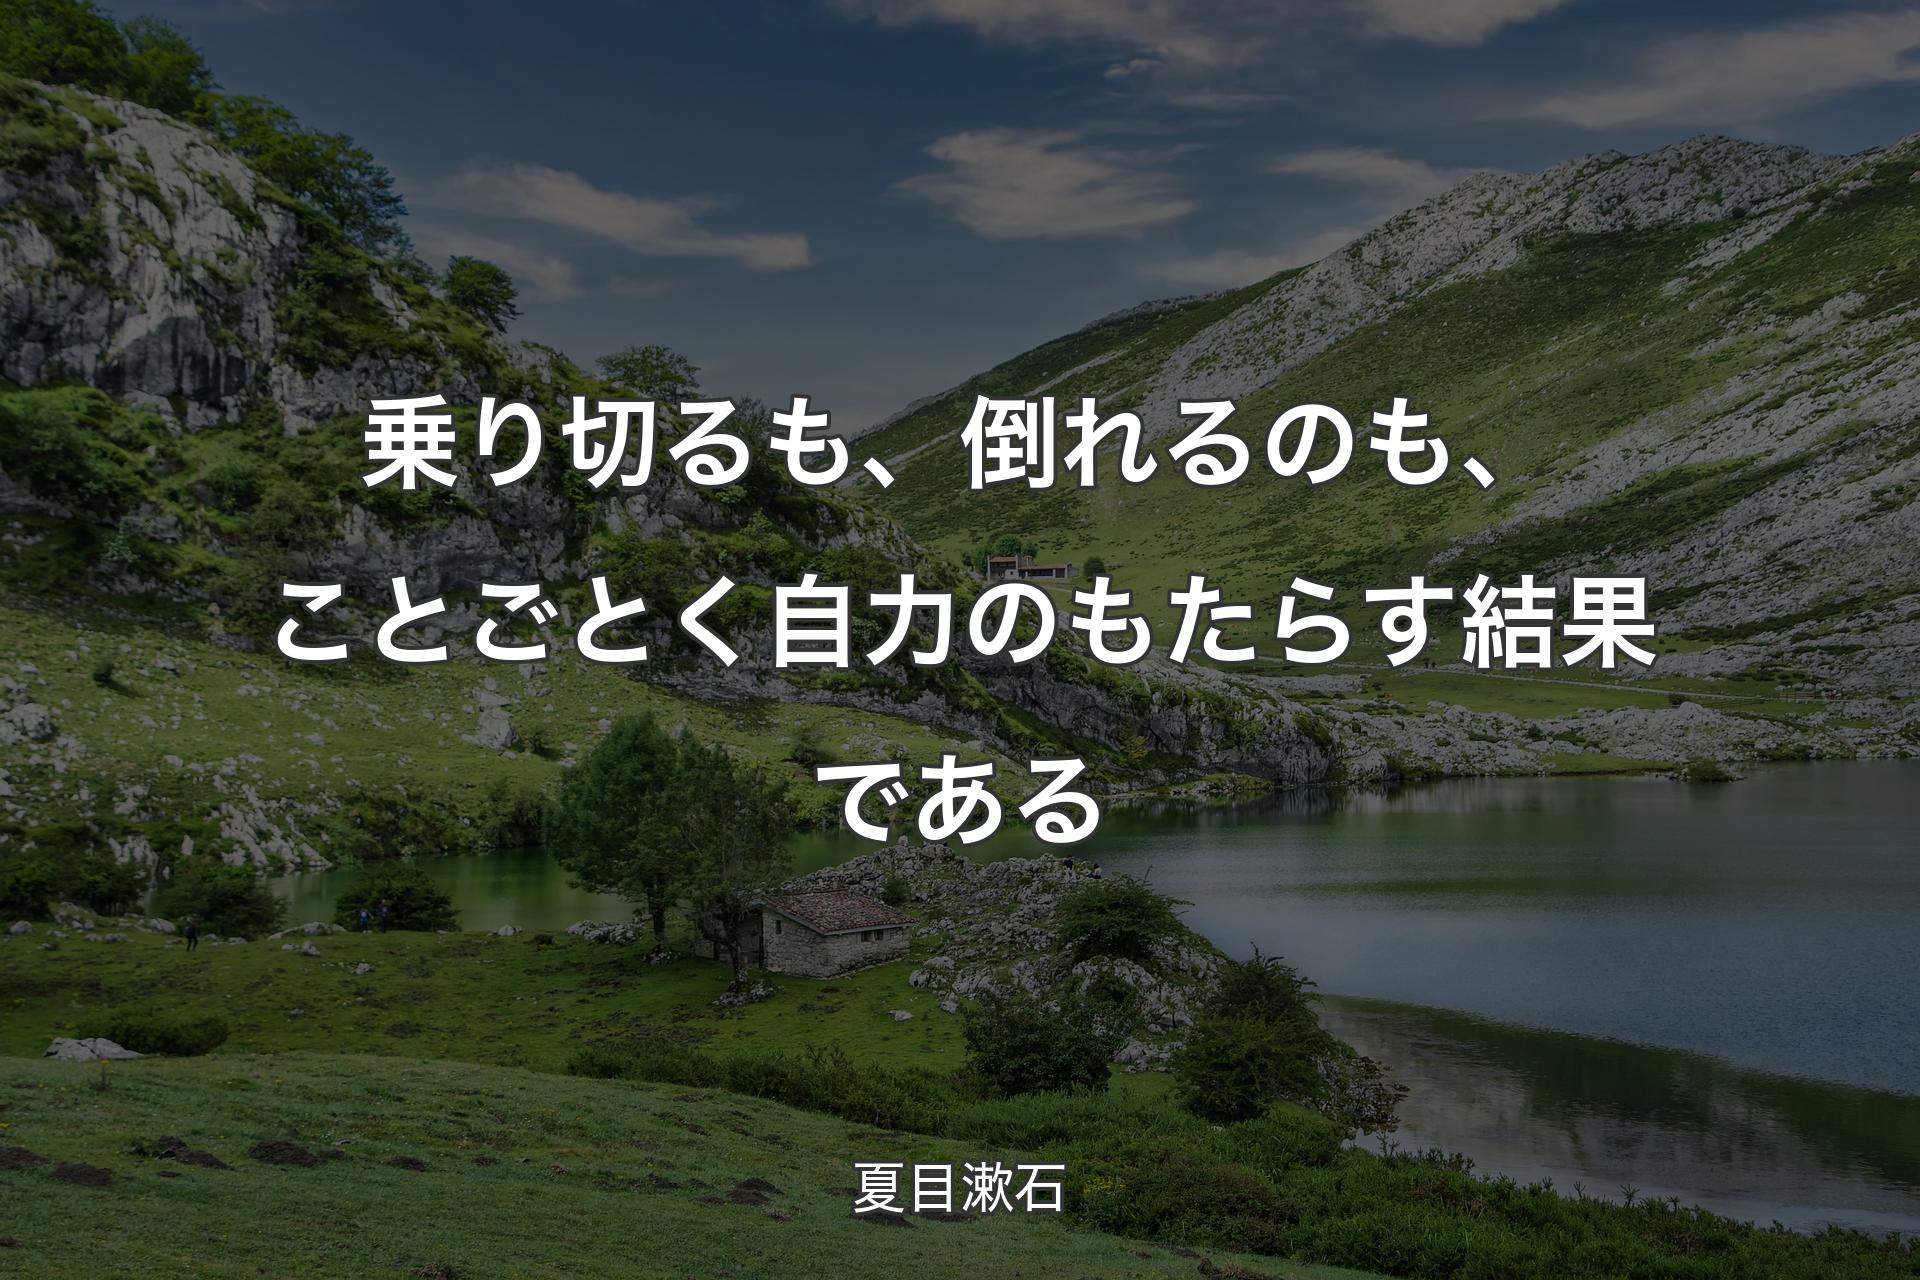 乗り切るも、倒れるのも、ことごとく自力のもたらす結果である - 夏目漱石